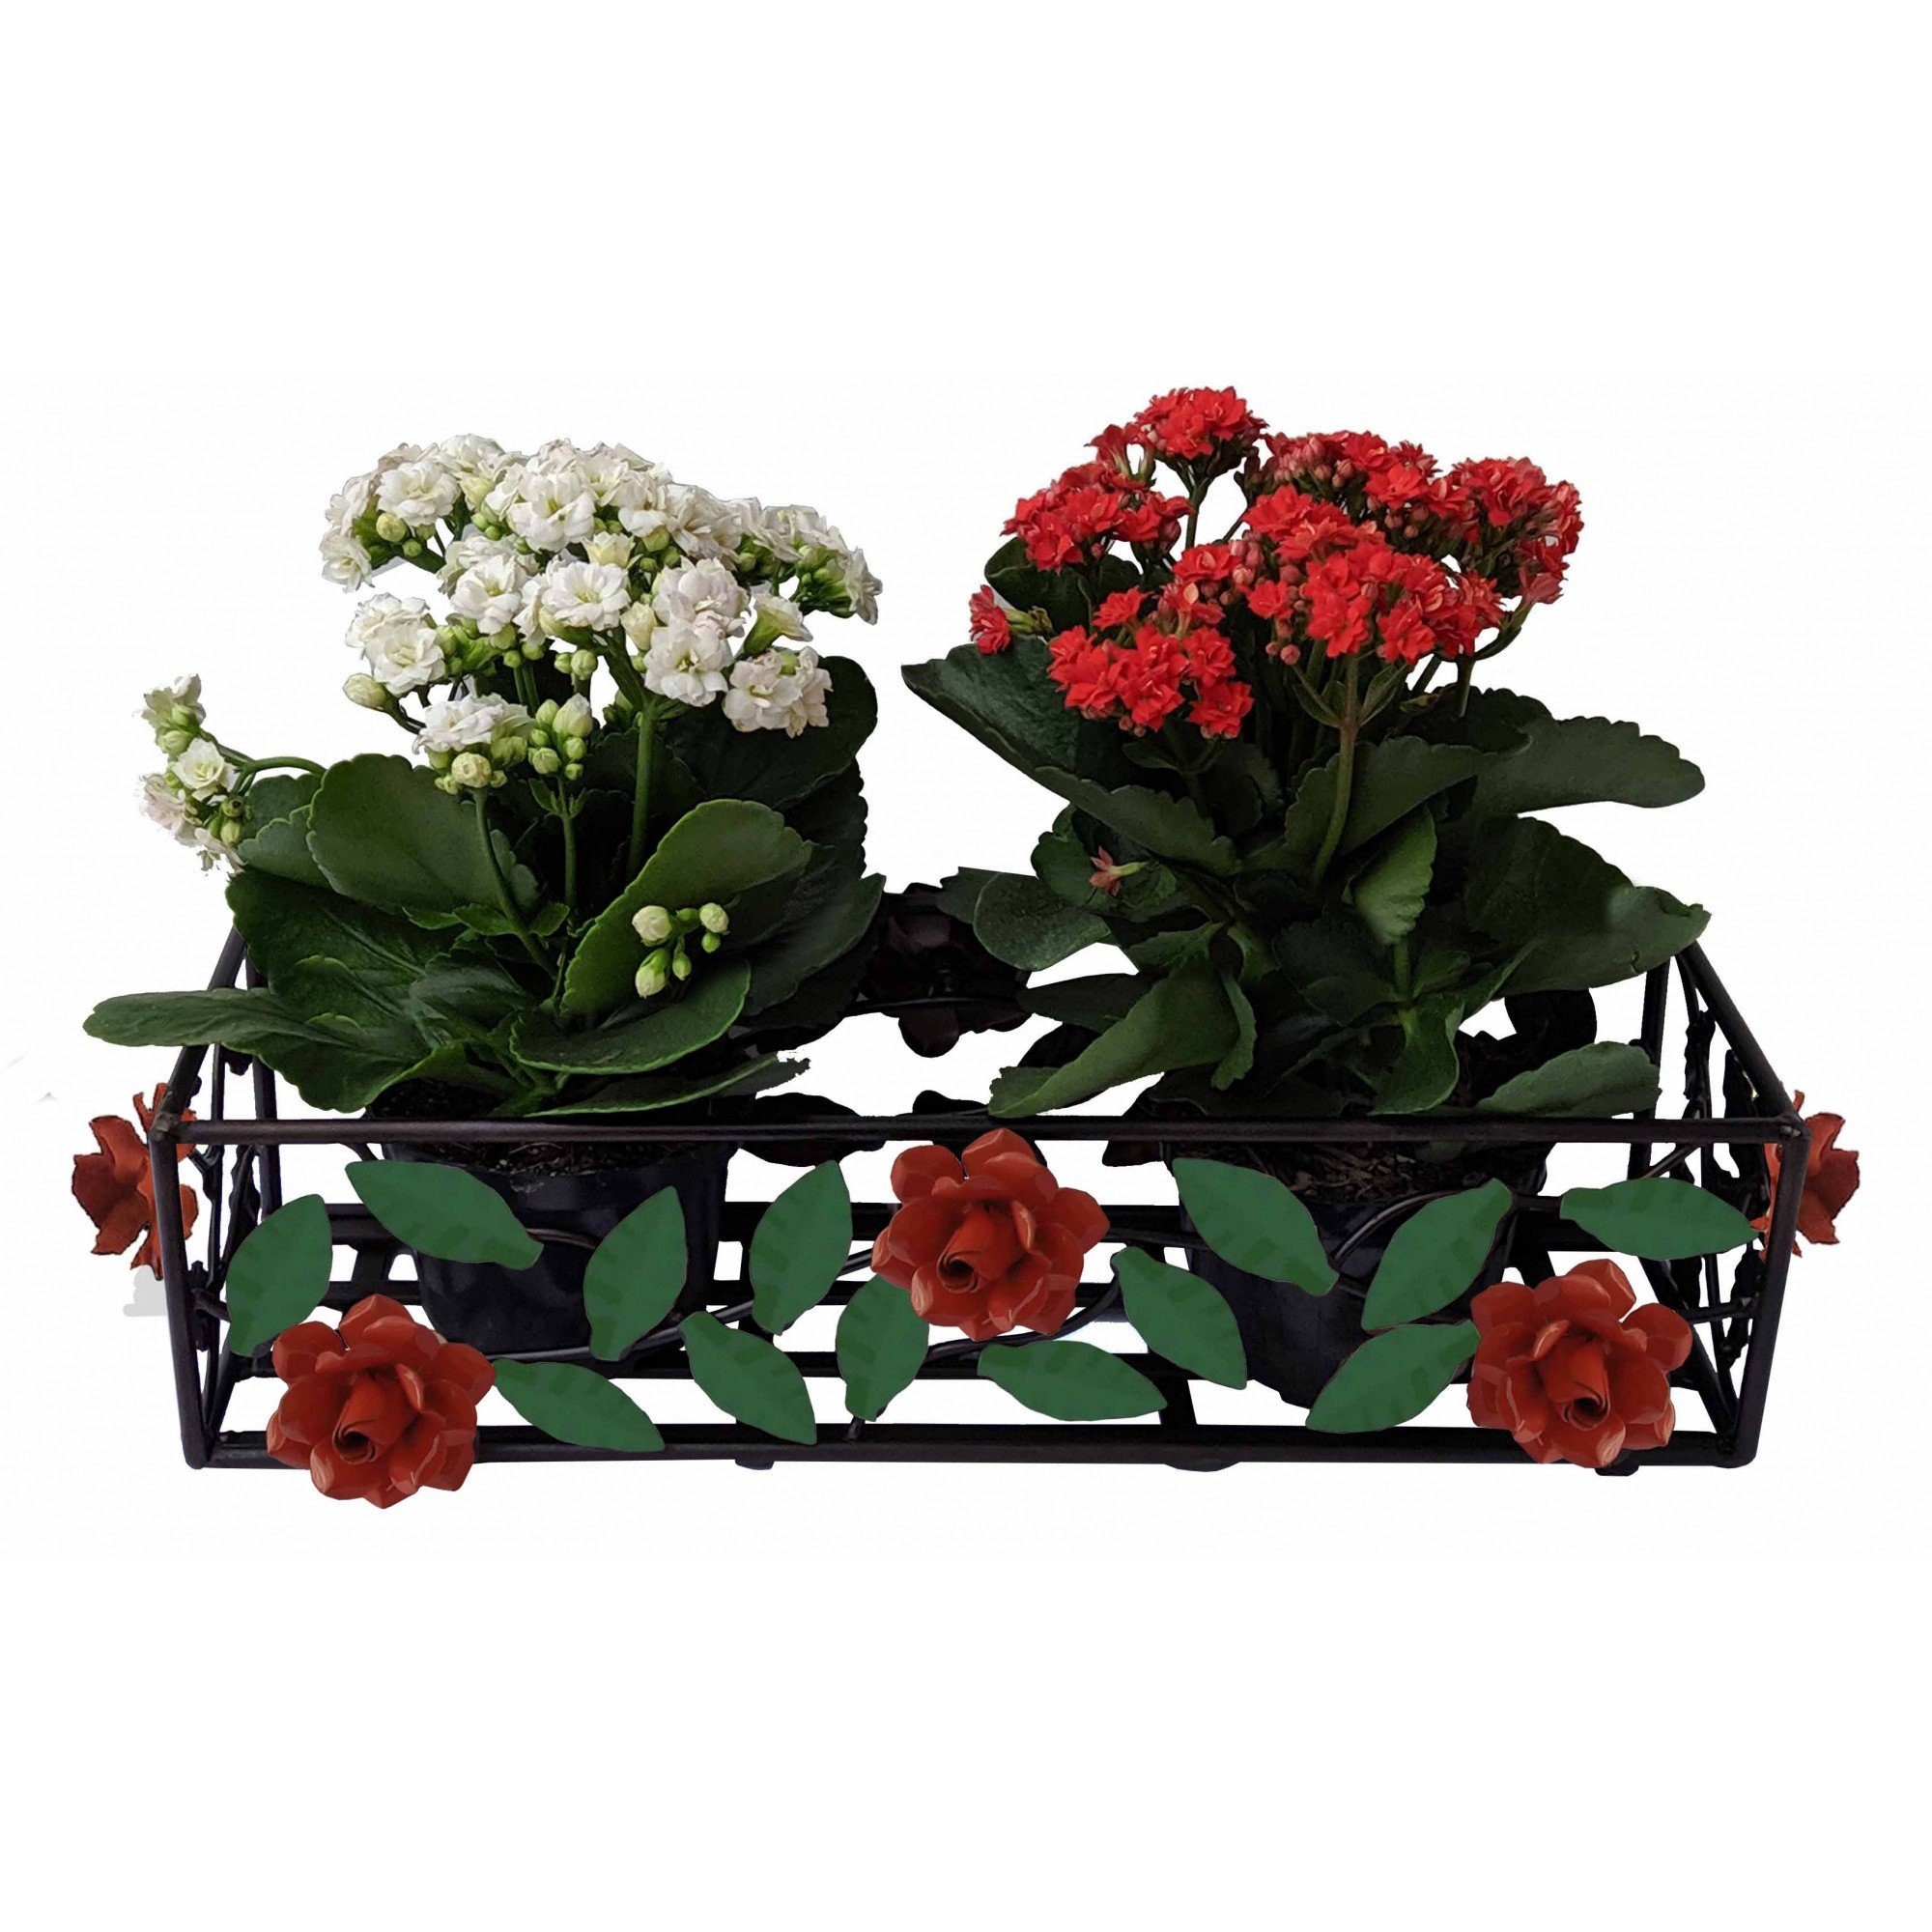 Jardineira com Flores Coloridas para Vasinhos de Flores Pequenos Libertas  Rosas Artesanato Floreira | MadeiraMadeira